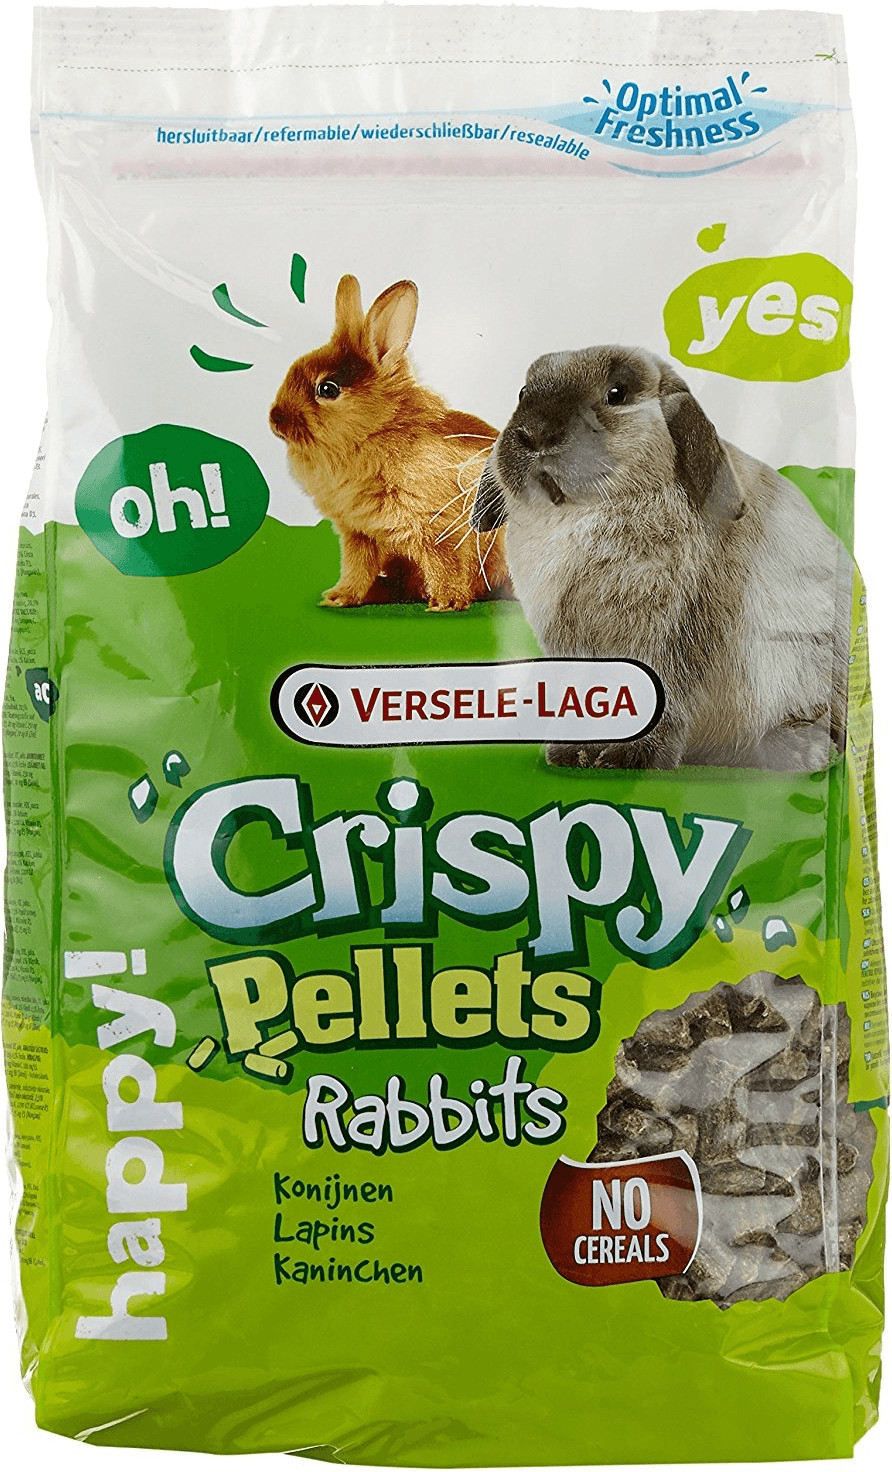 Pellets - Rabbits - Versele-Laga